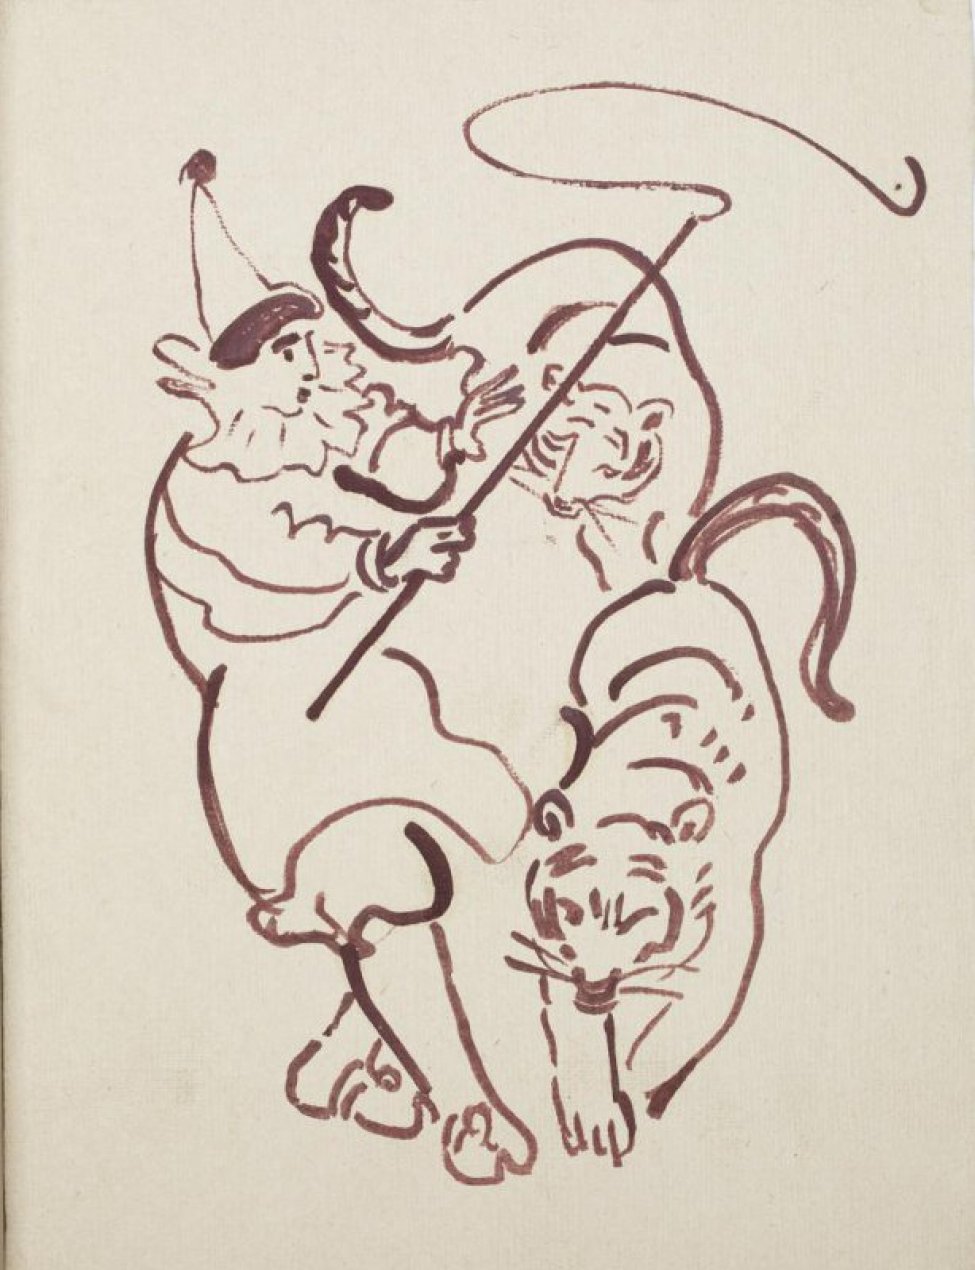 В центре композиции изображен дрессировщик с хлыстом в правой руке, перед ним два тигра.